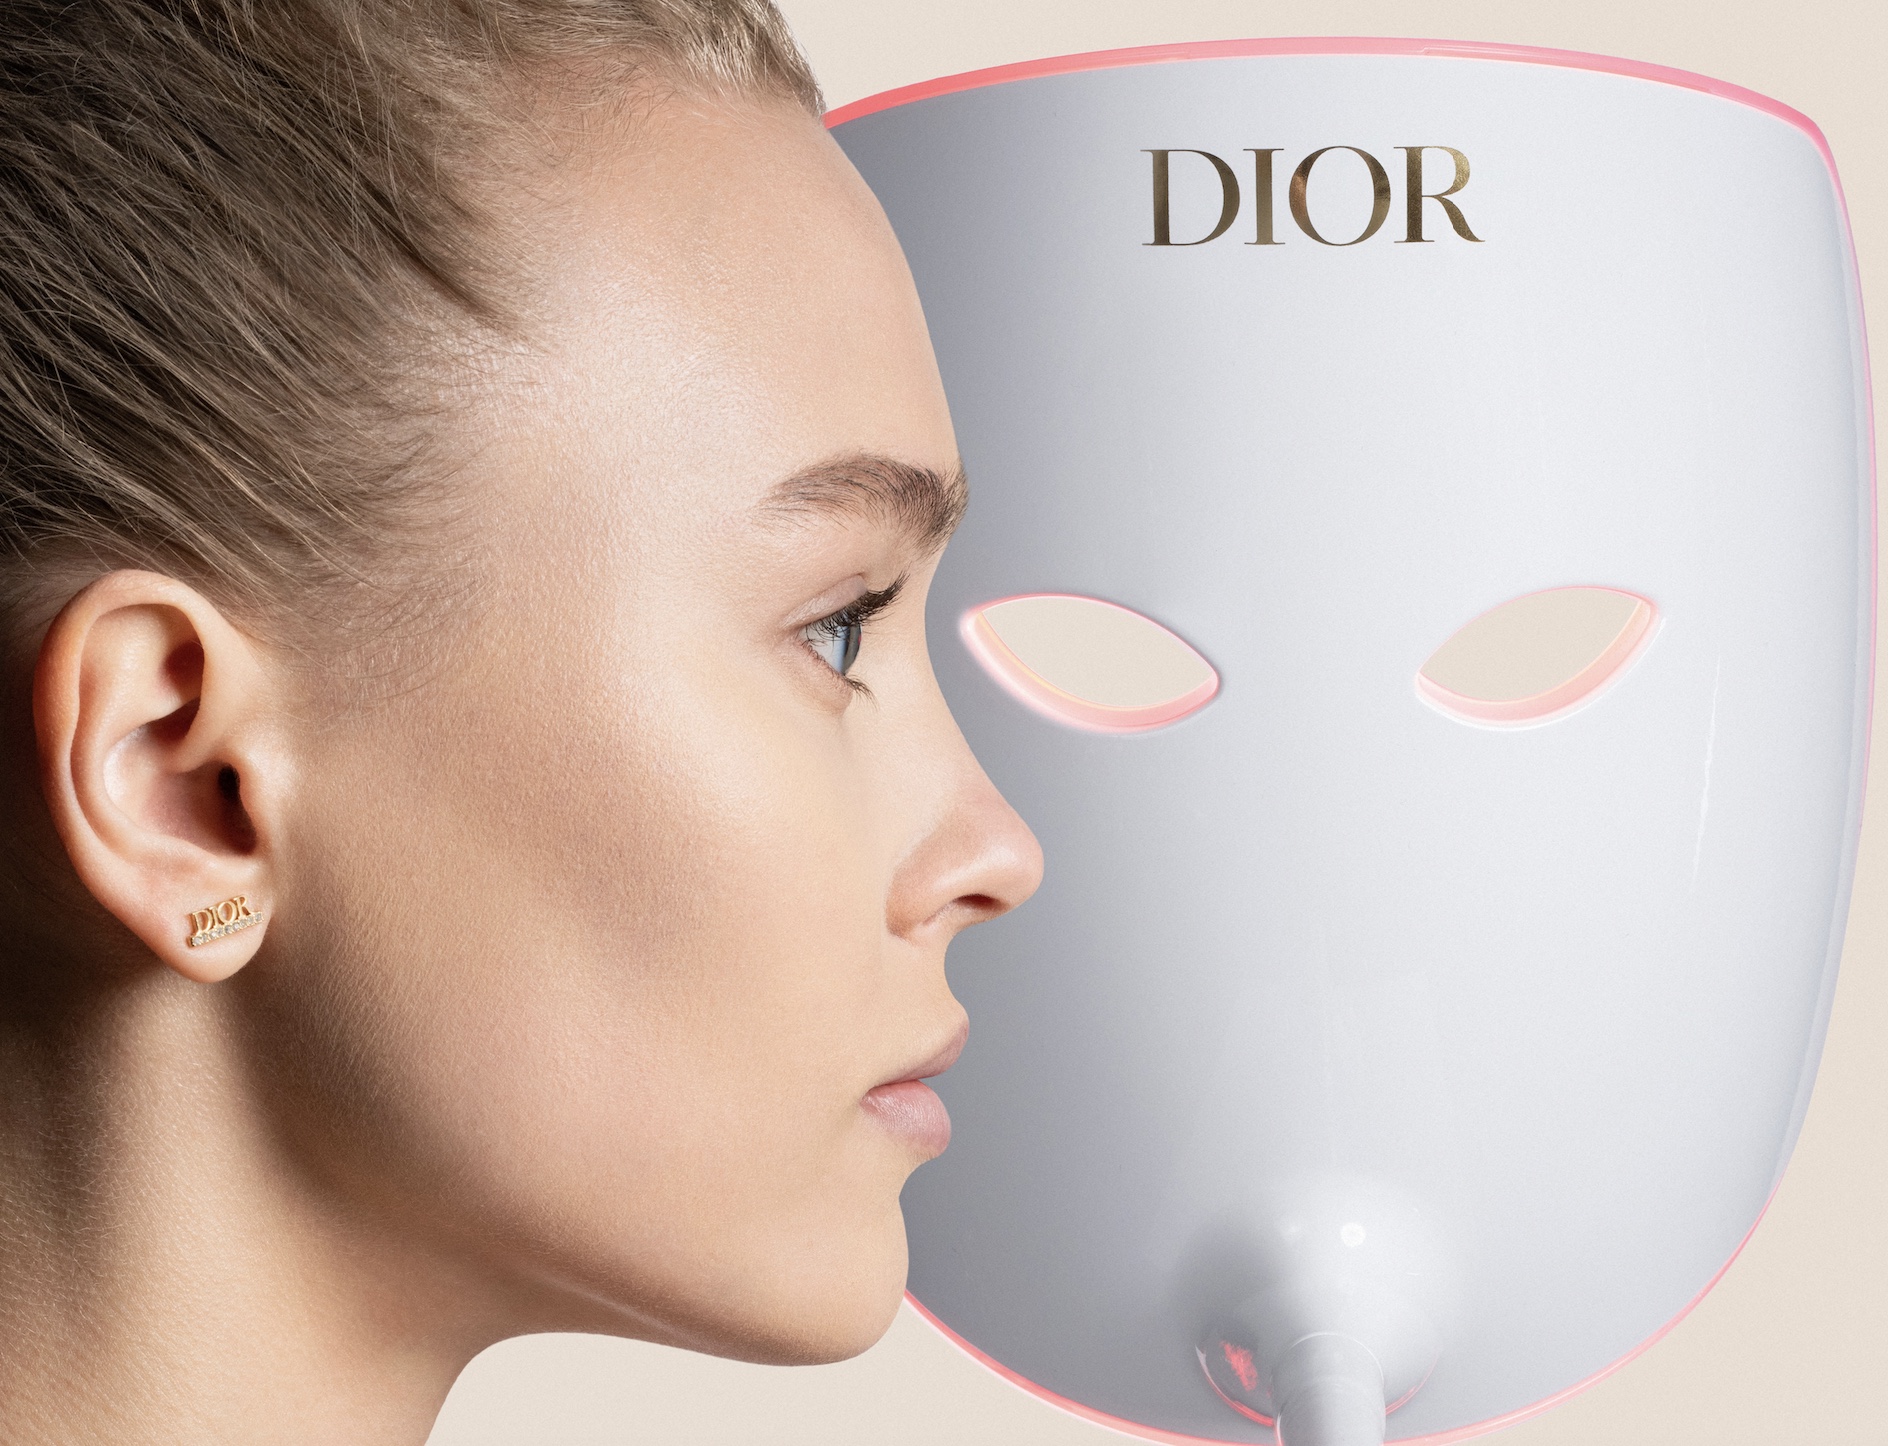 Dior entra en el beauty tech con su lámparada de luz led